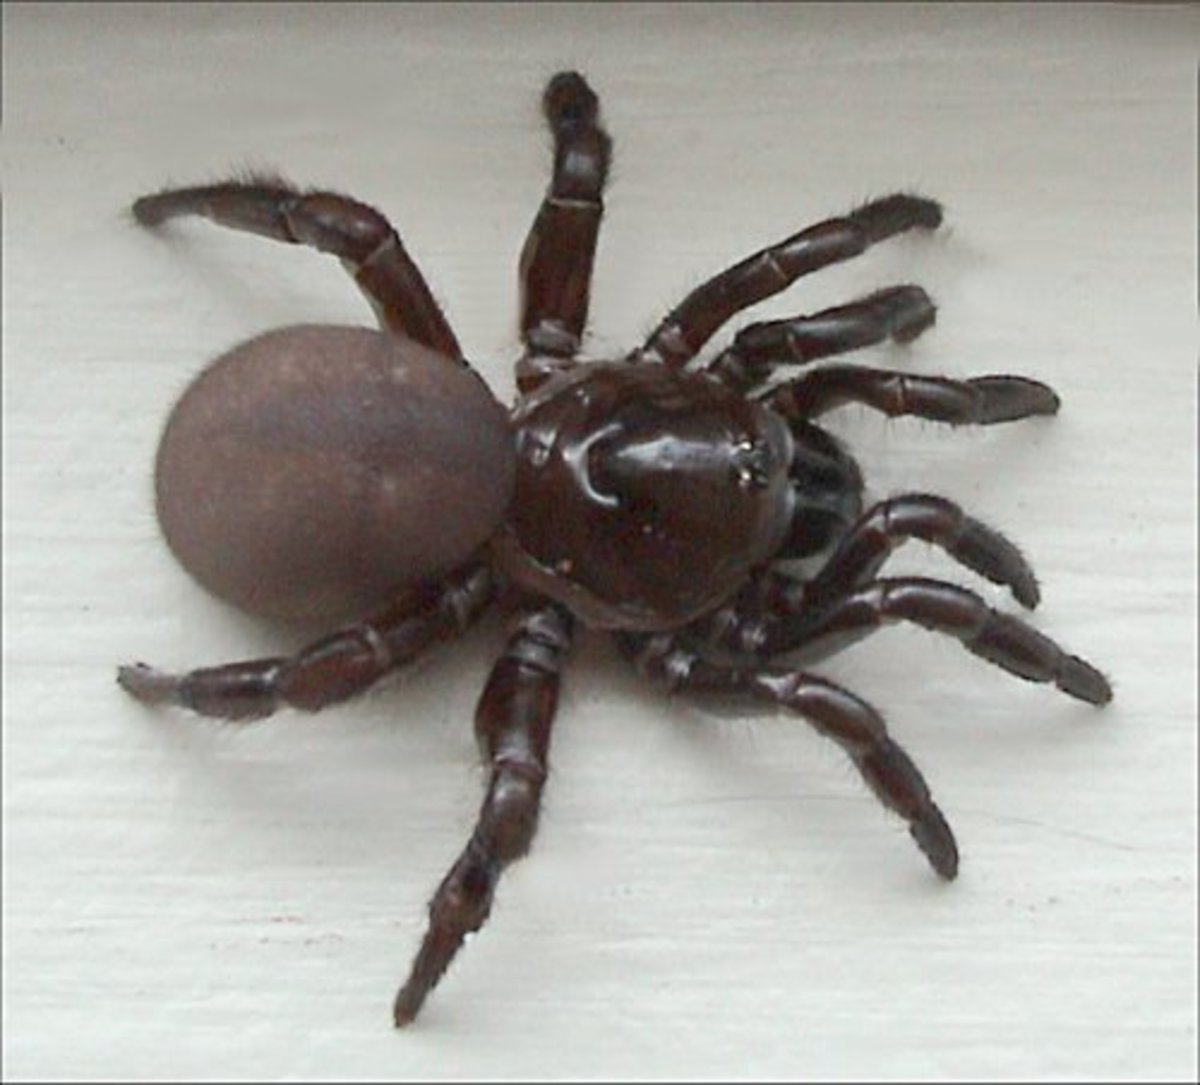 A trapdoor spider